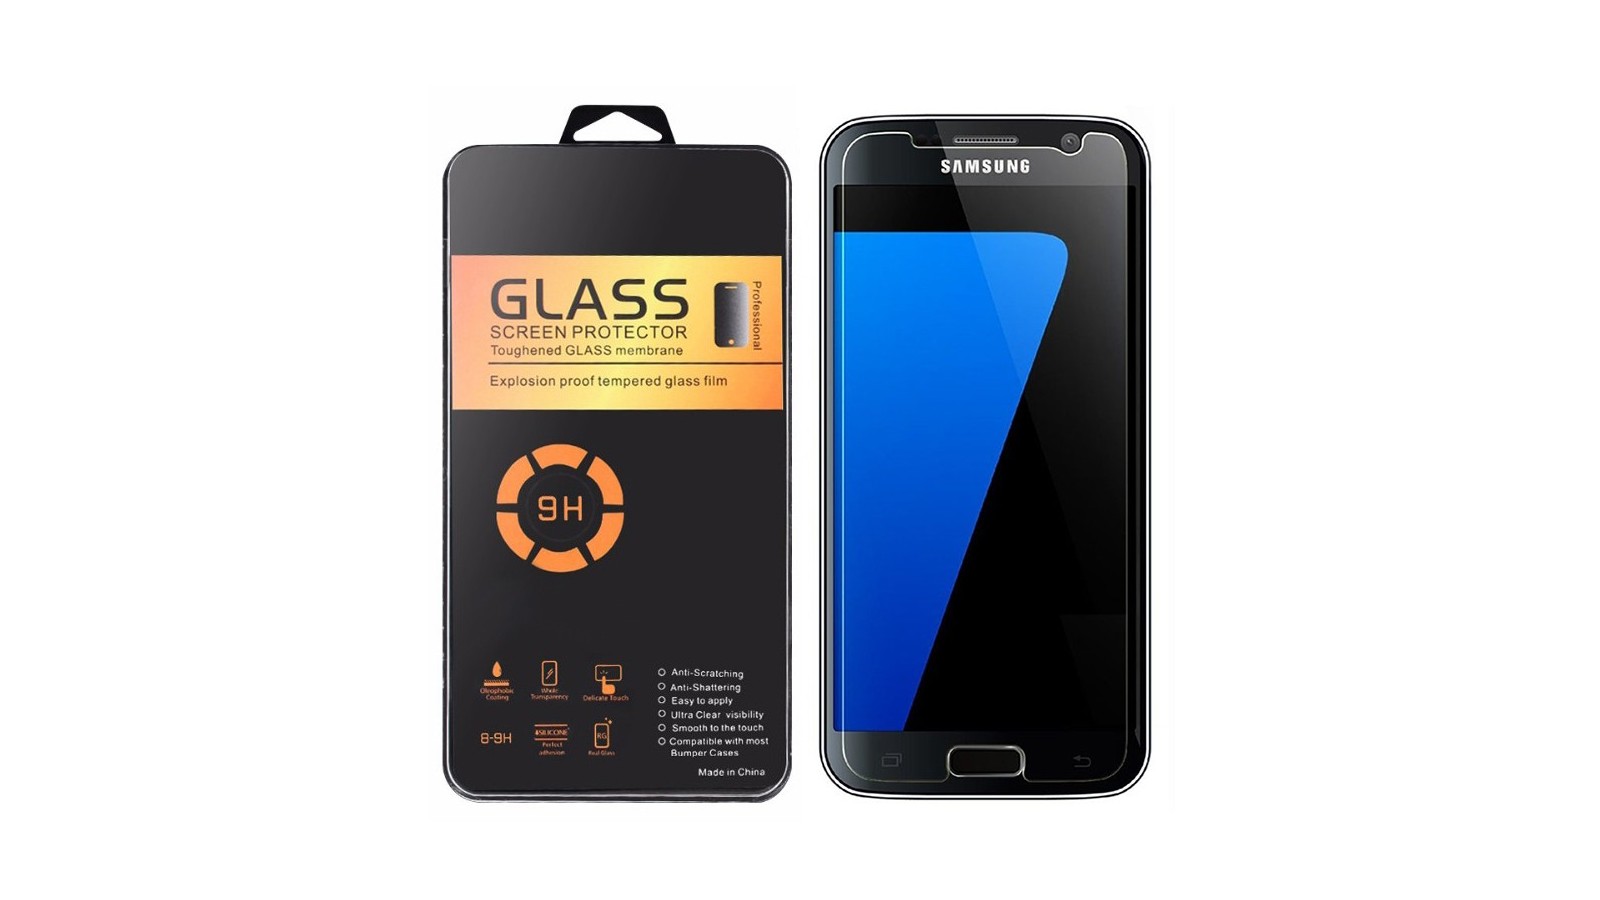 Pellicola trasparente in vetro temperato per Samsung Galaxy S7 G930